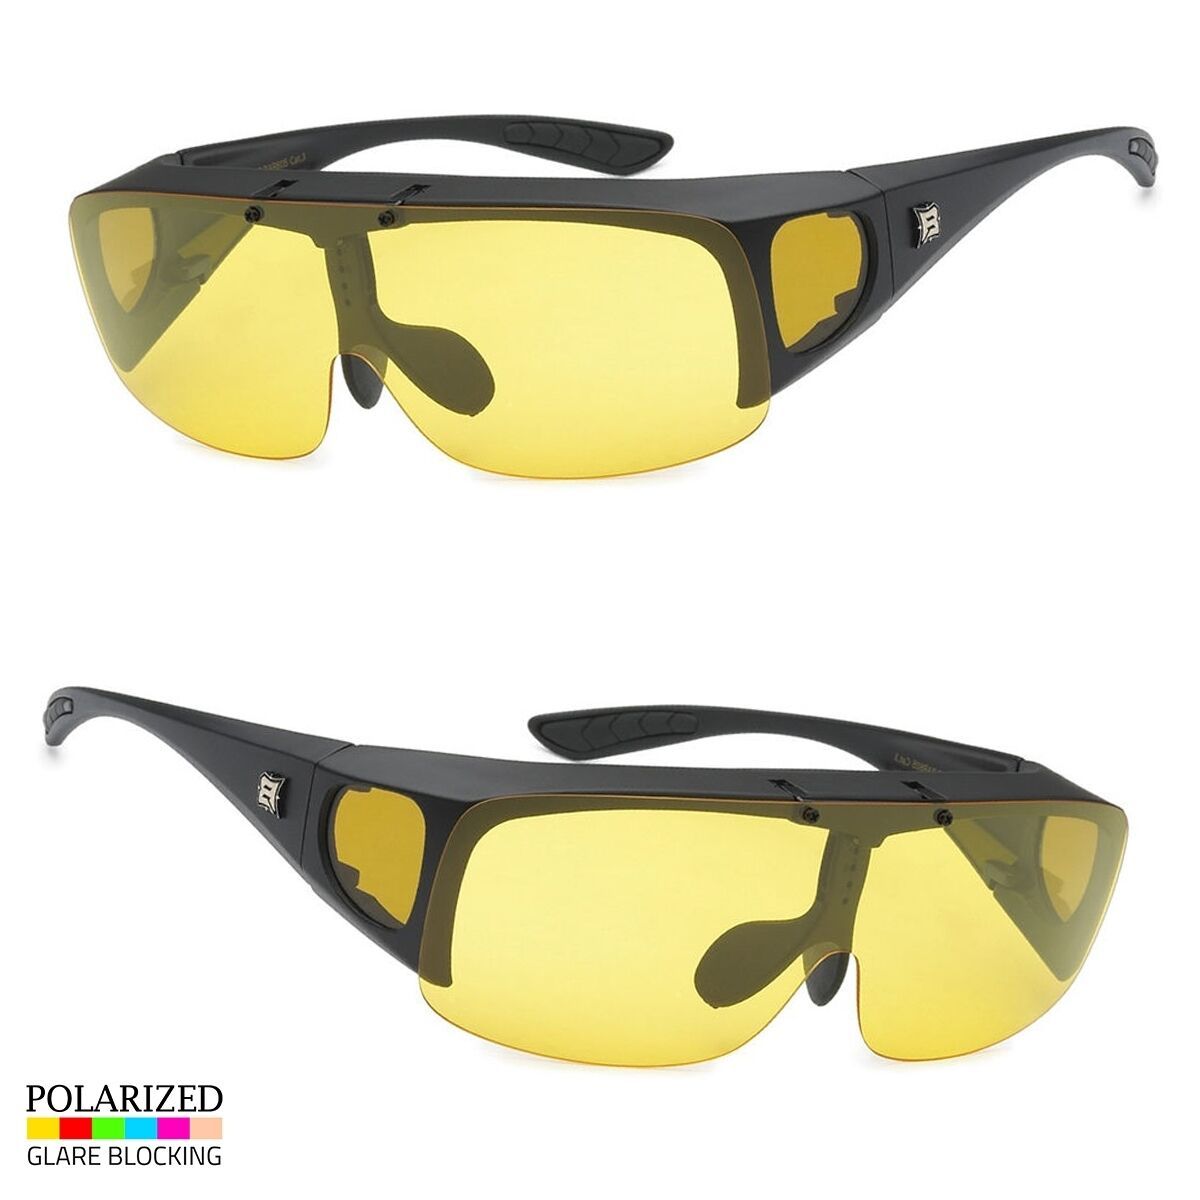 Polarized Sunglasses Cover Put Wear fit over Prescription ...